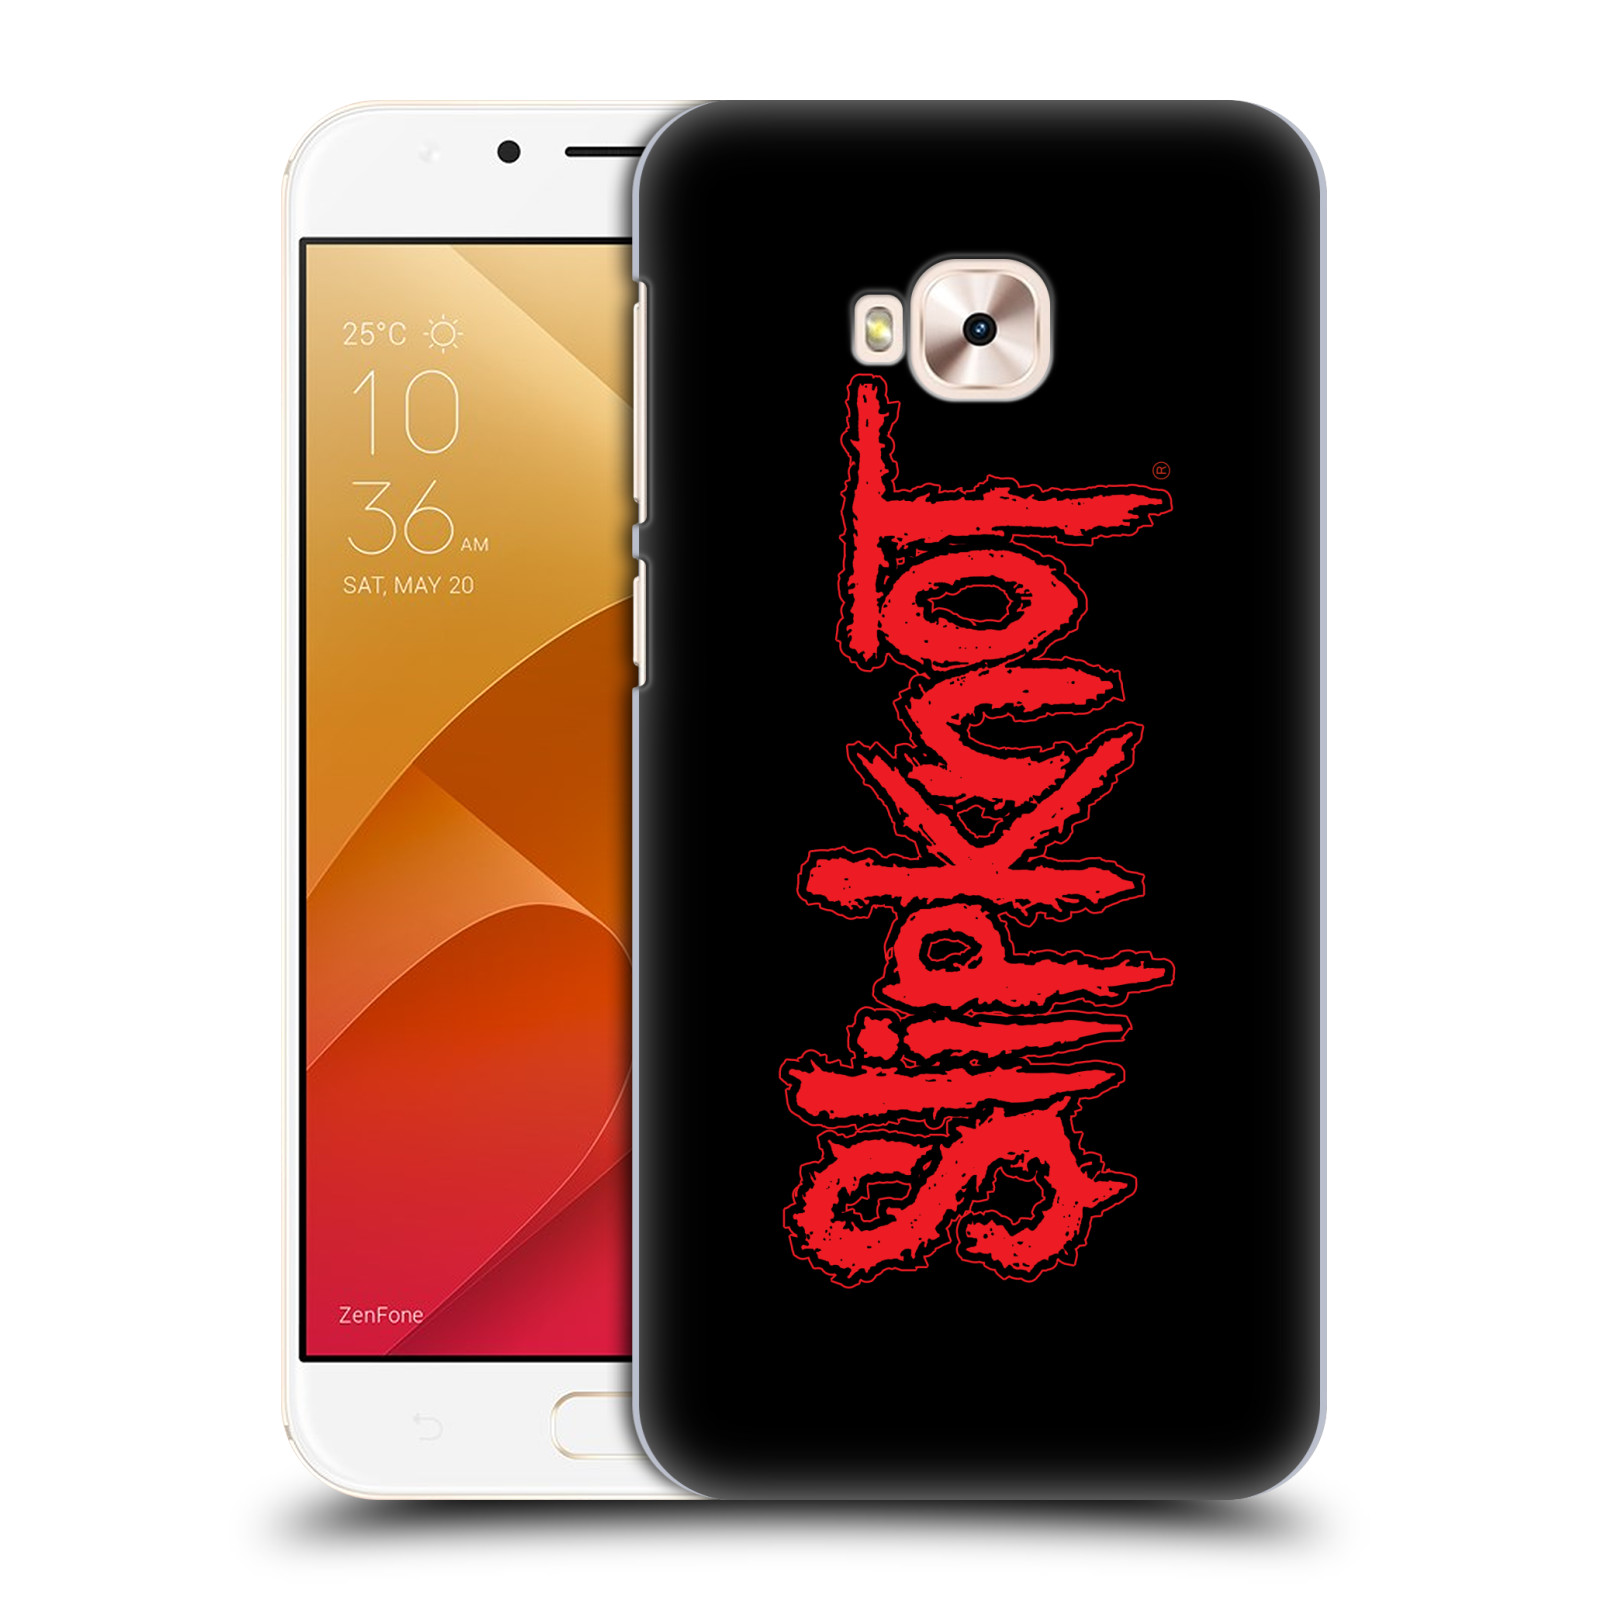 HEAD CASE plastový obal na mobil Asus Zenfone 4 Selfie Pro ZD552KL hudební skupina Slipknot logo velké